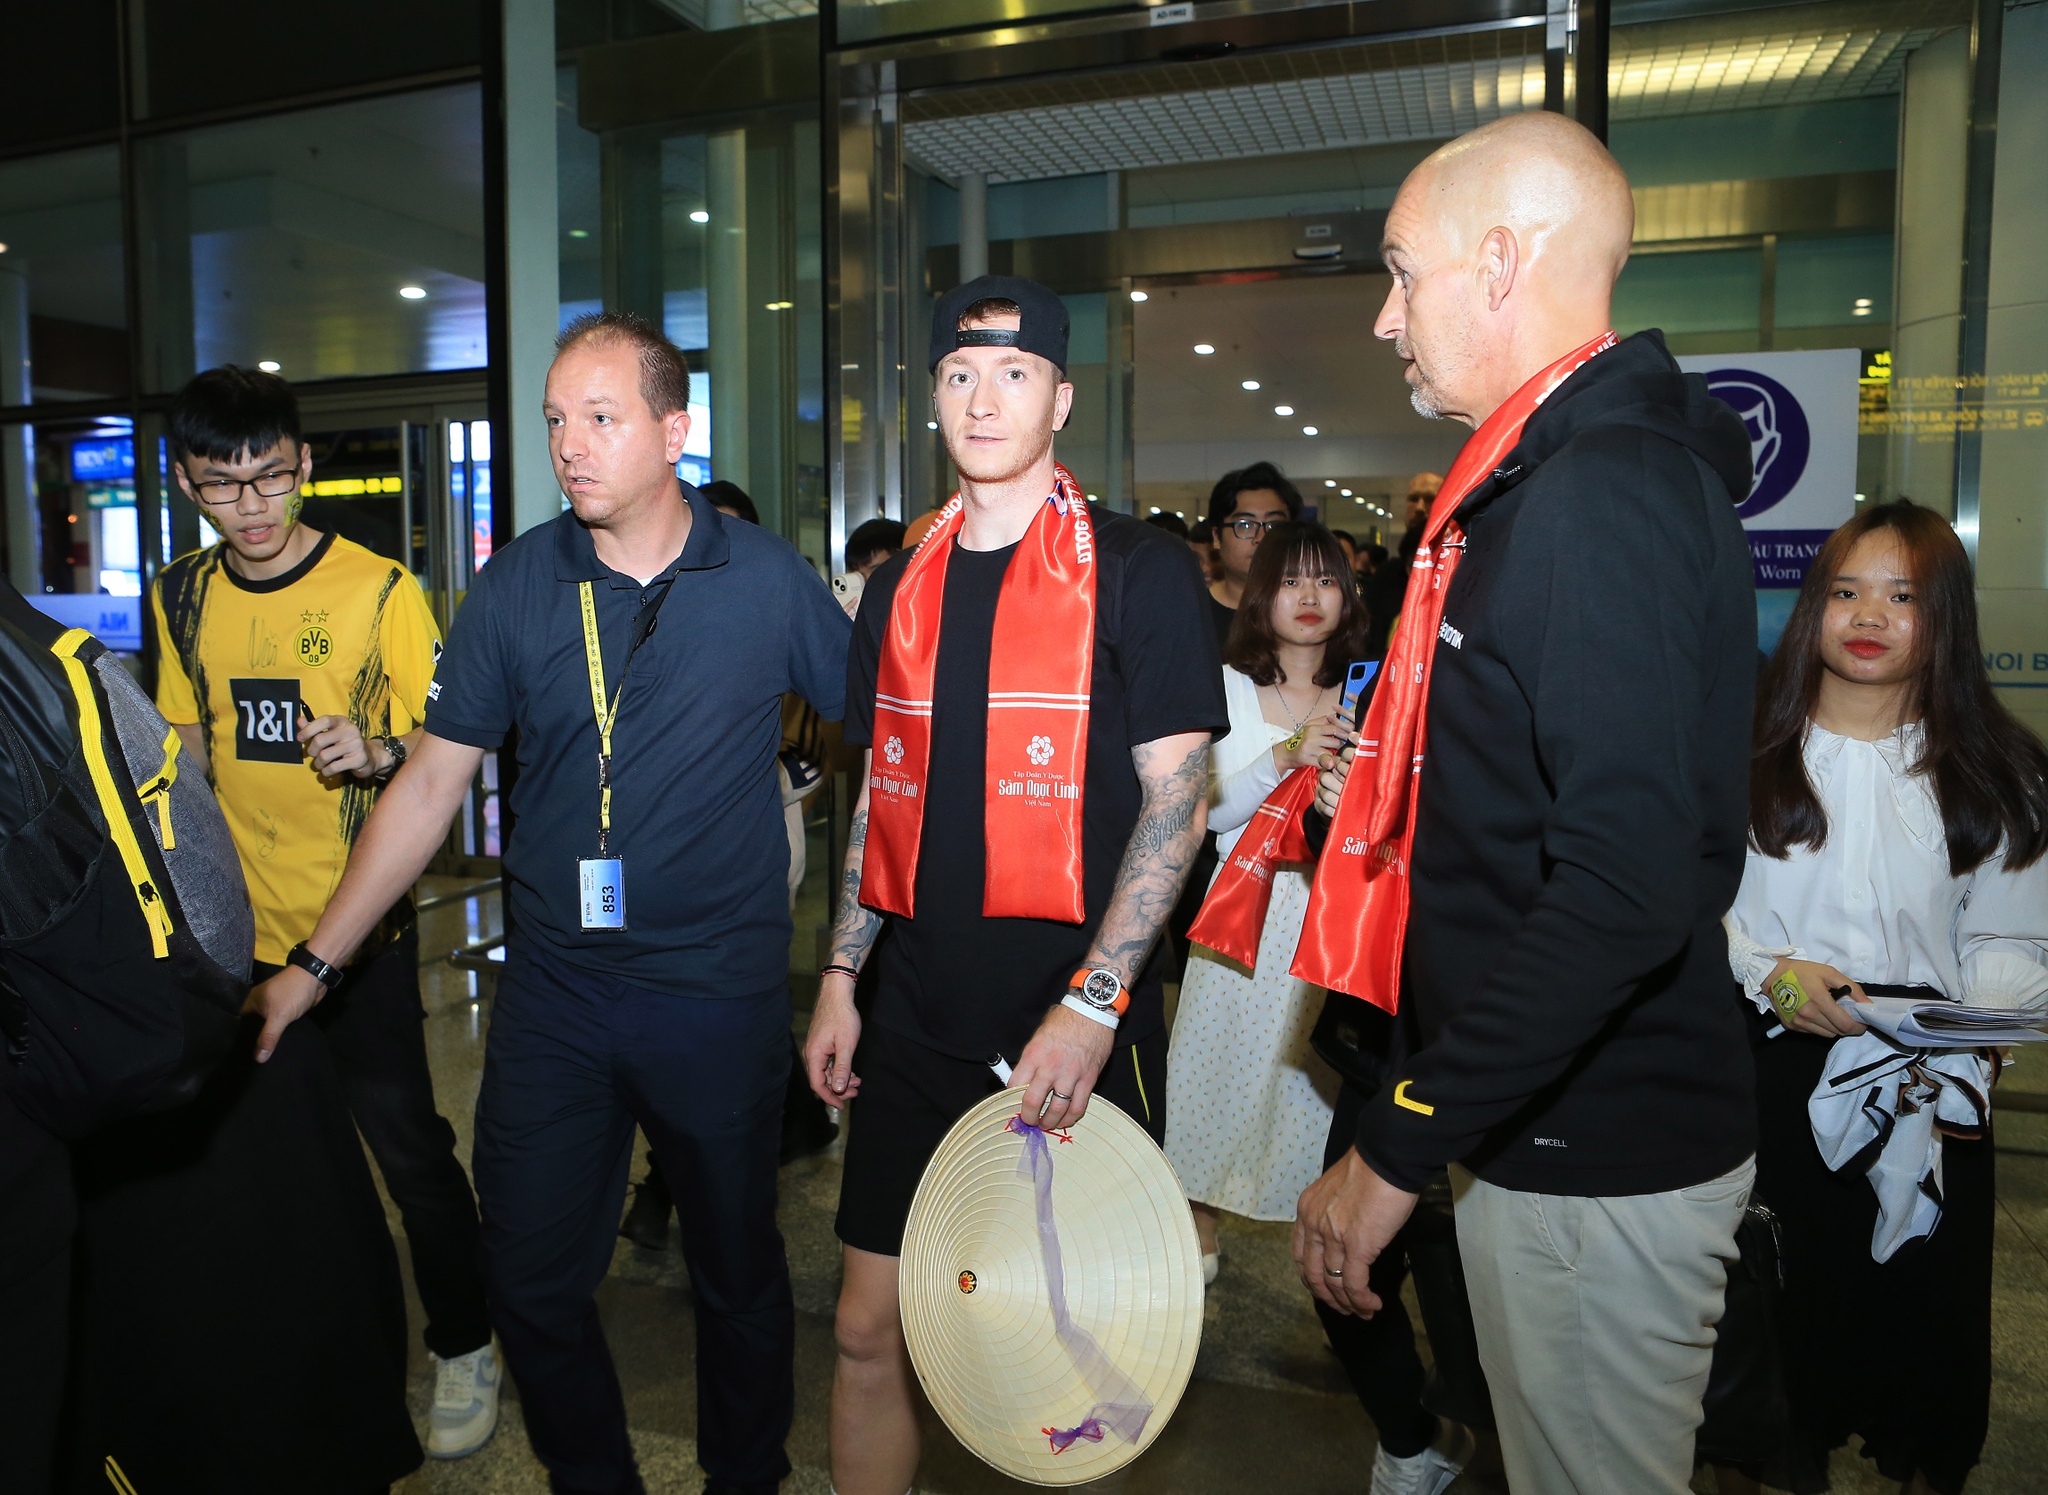 Ngôi sao Marco Reus và CLB Dortmund được chào đón nồng hậu ở Hà Nội-4